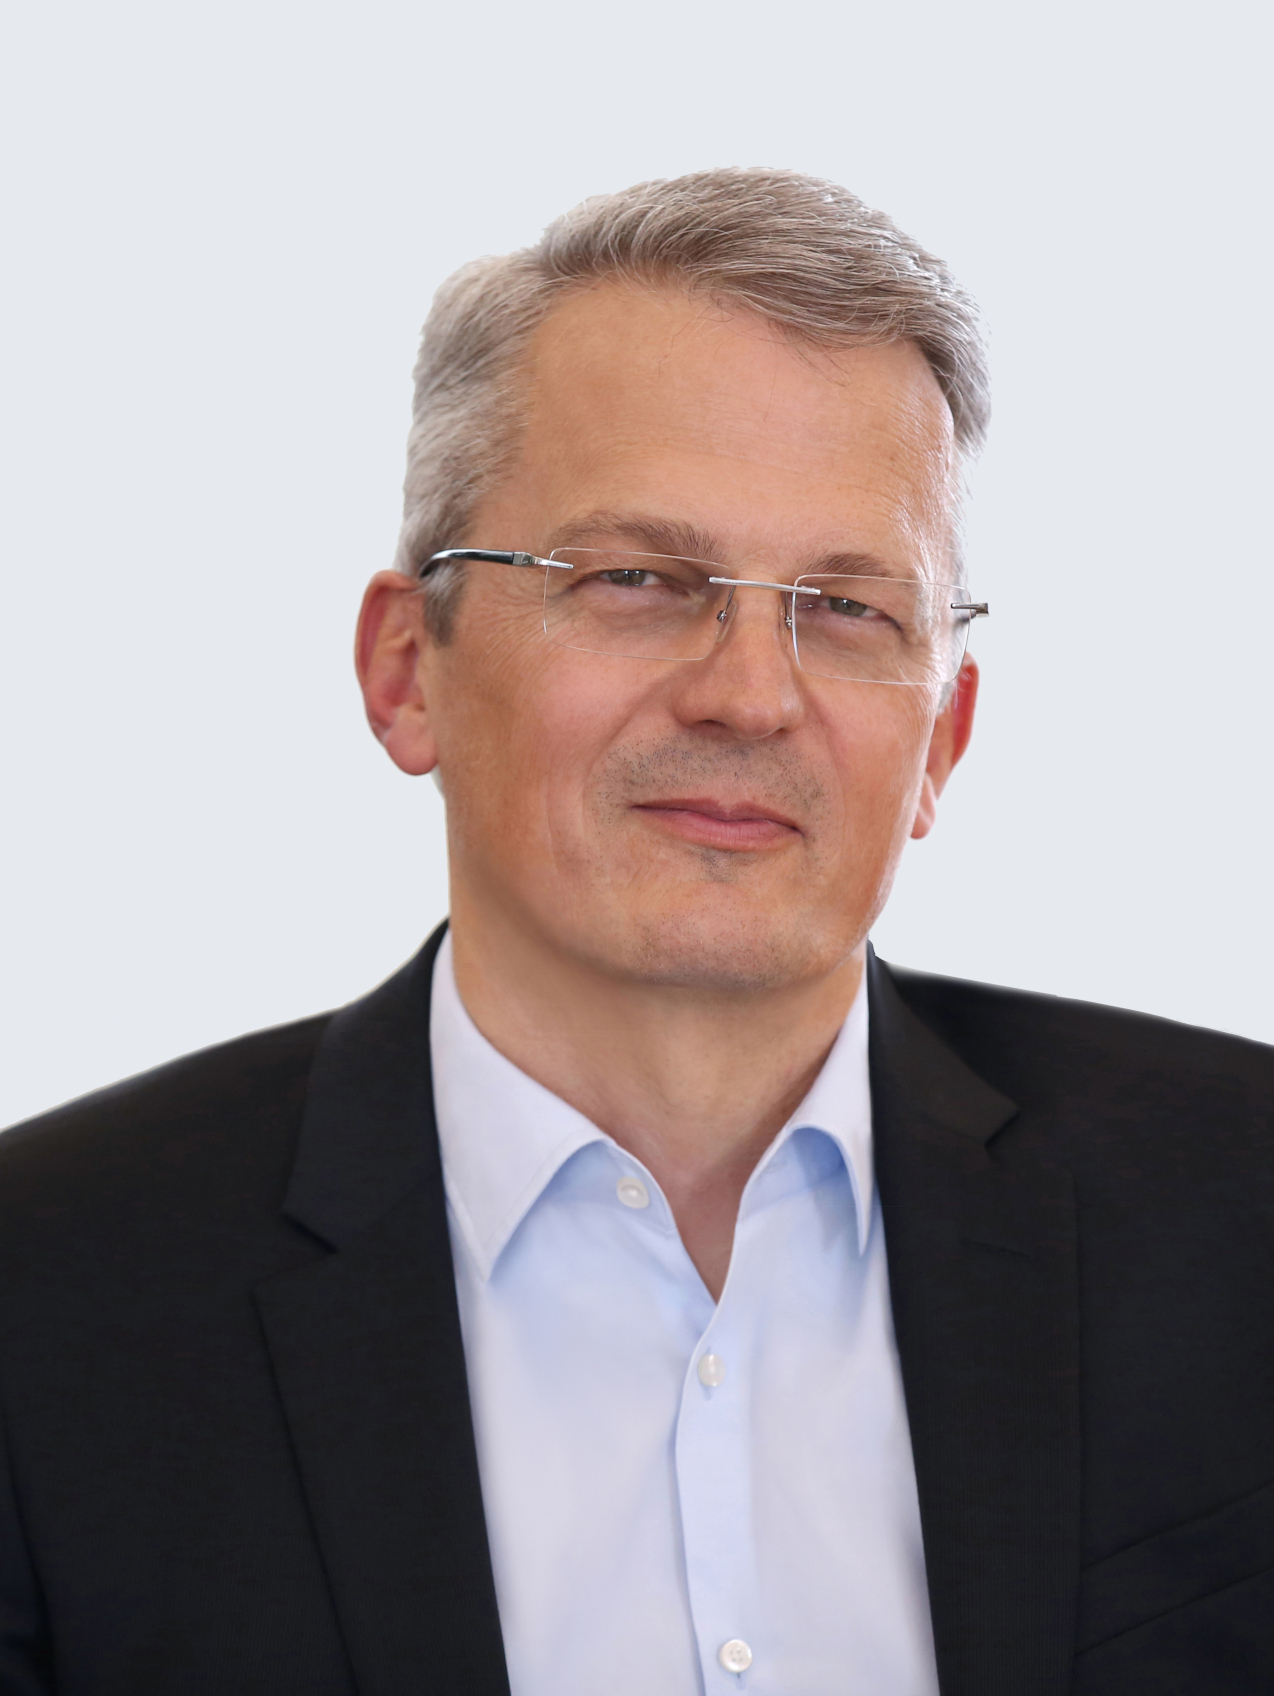 Pierre-Alain Ruffieux, PhD